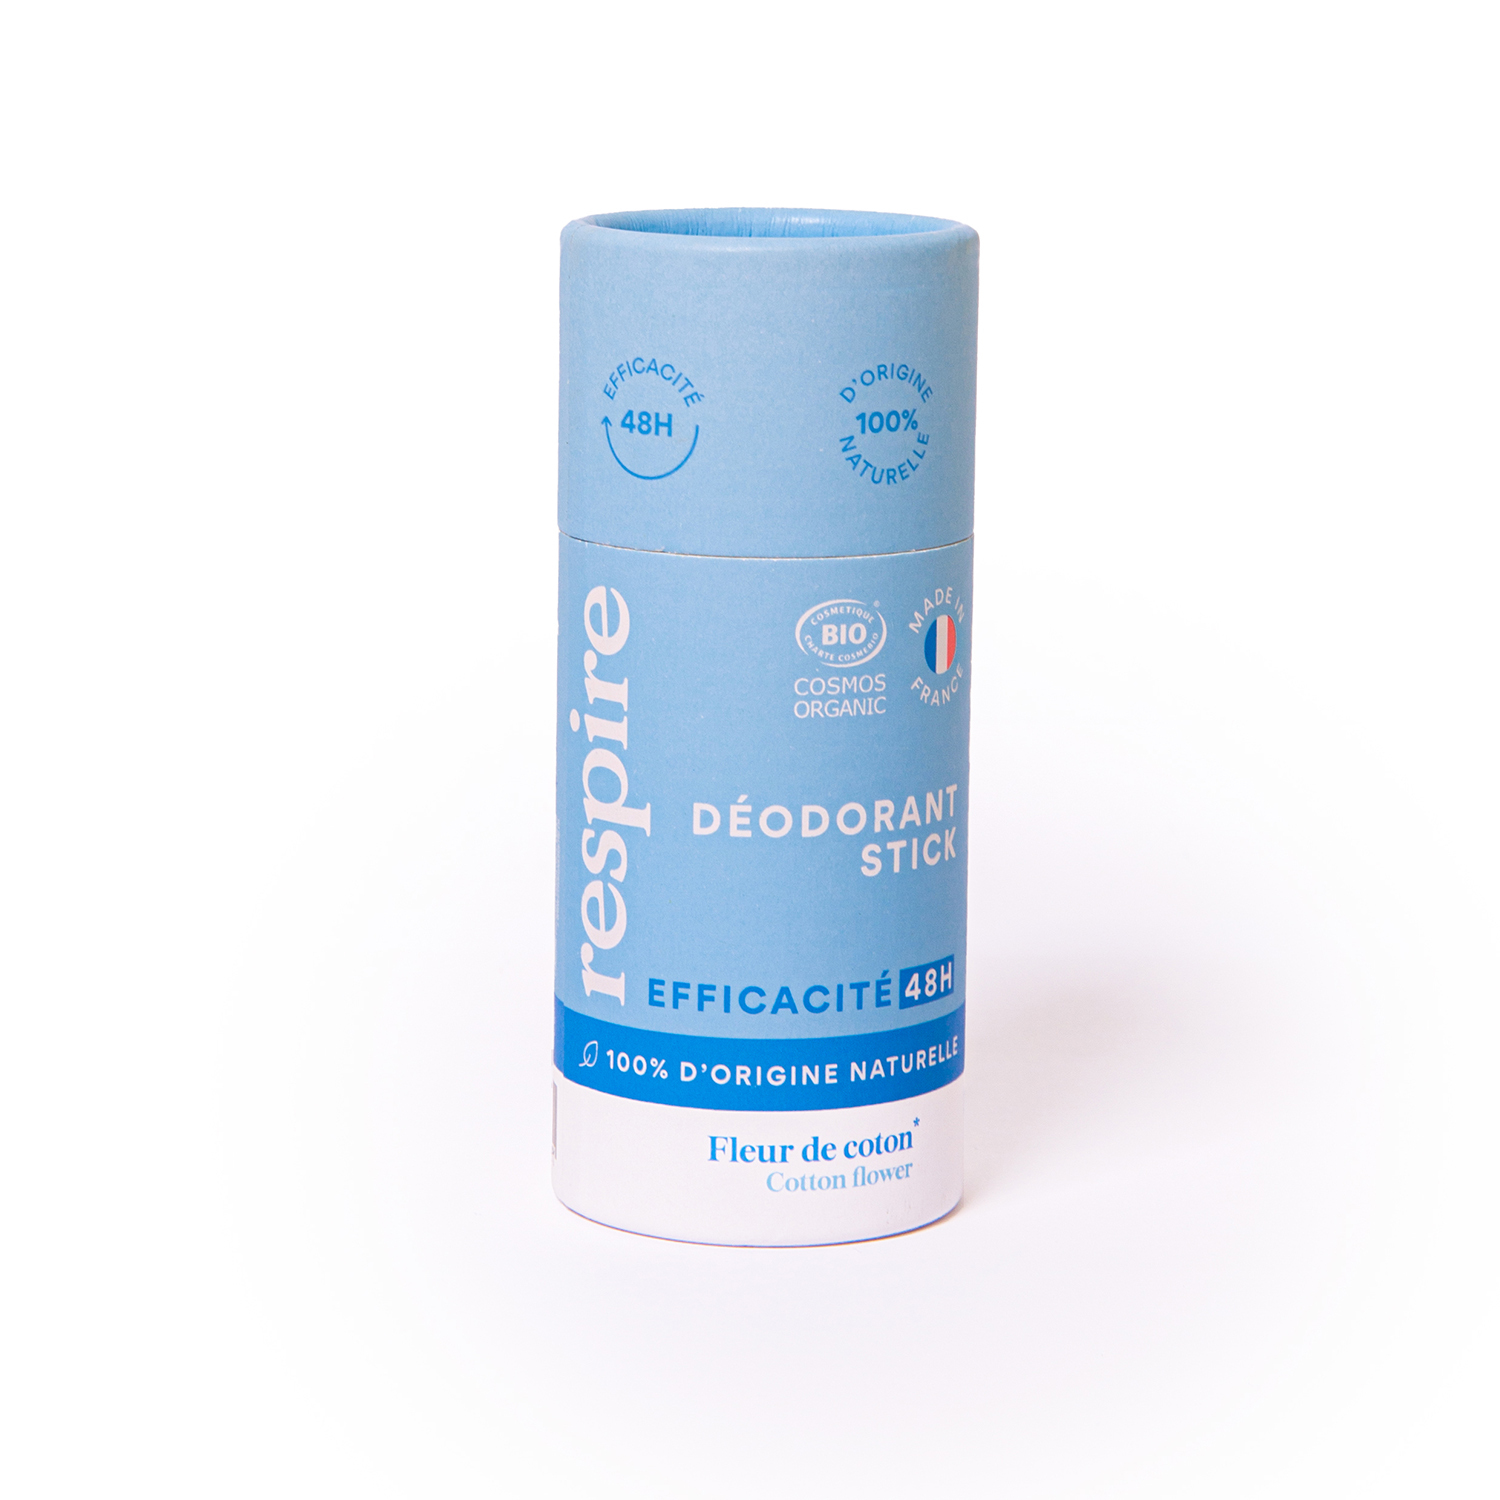 Déodorant stick solide - BIO et naturel - Efficace 48h - Fleur de coton - RESPIRE